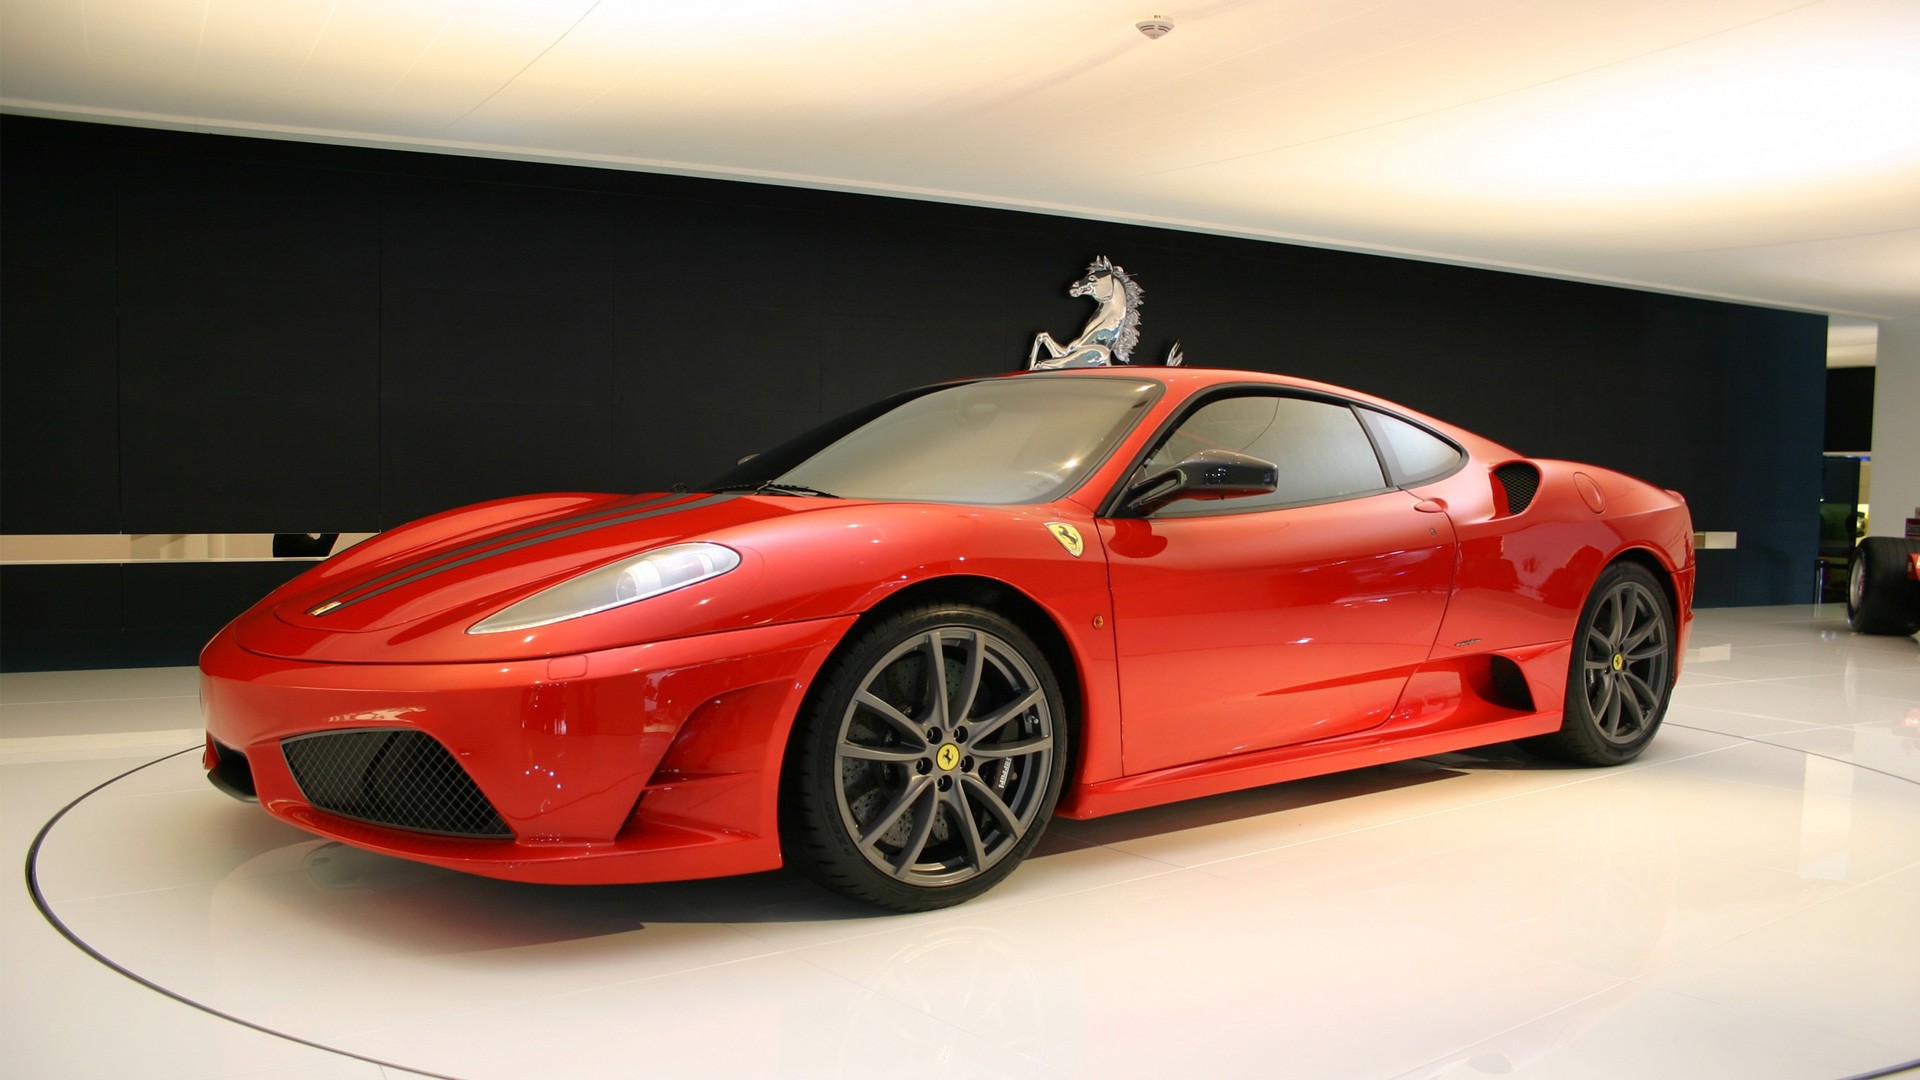 Бесплатное фото Ferrari F430 красного цвета